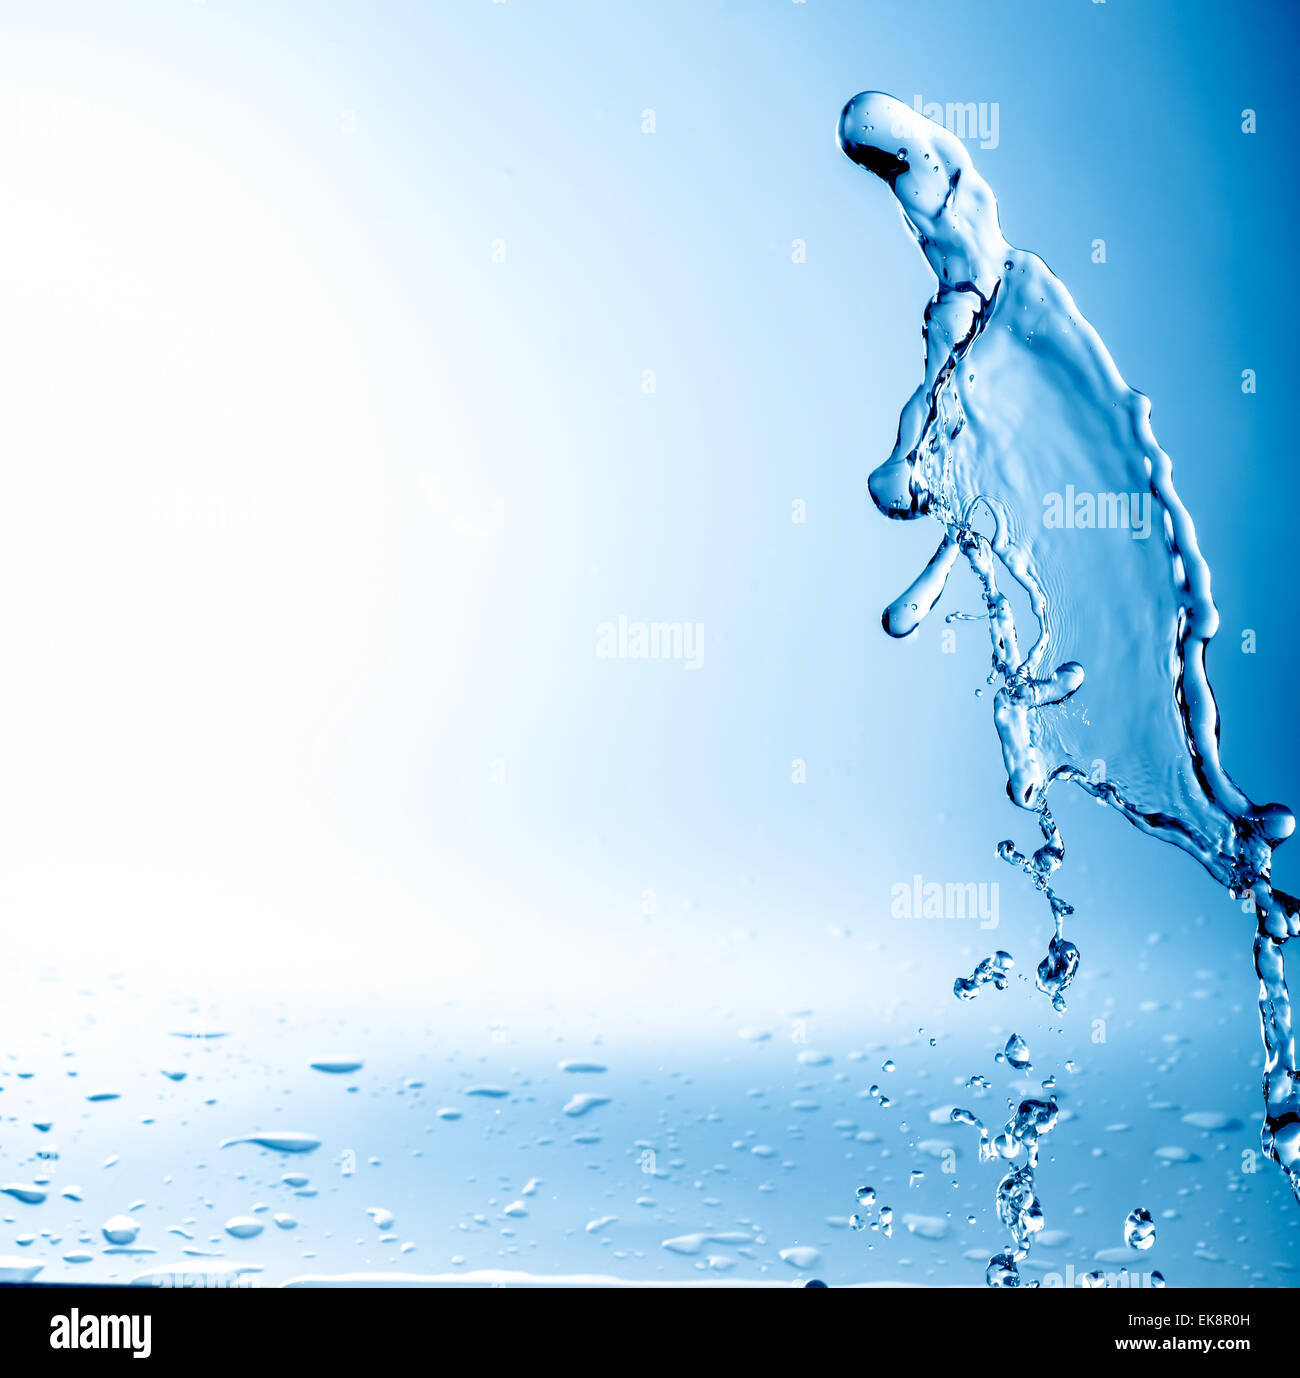 water splash Stock Photo